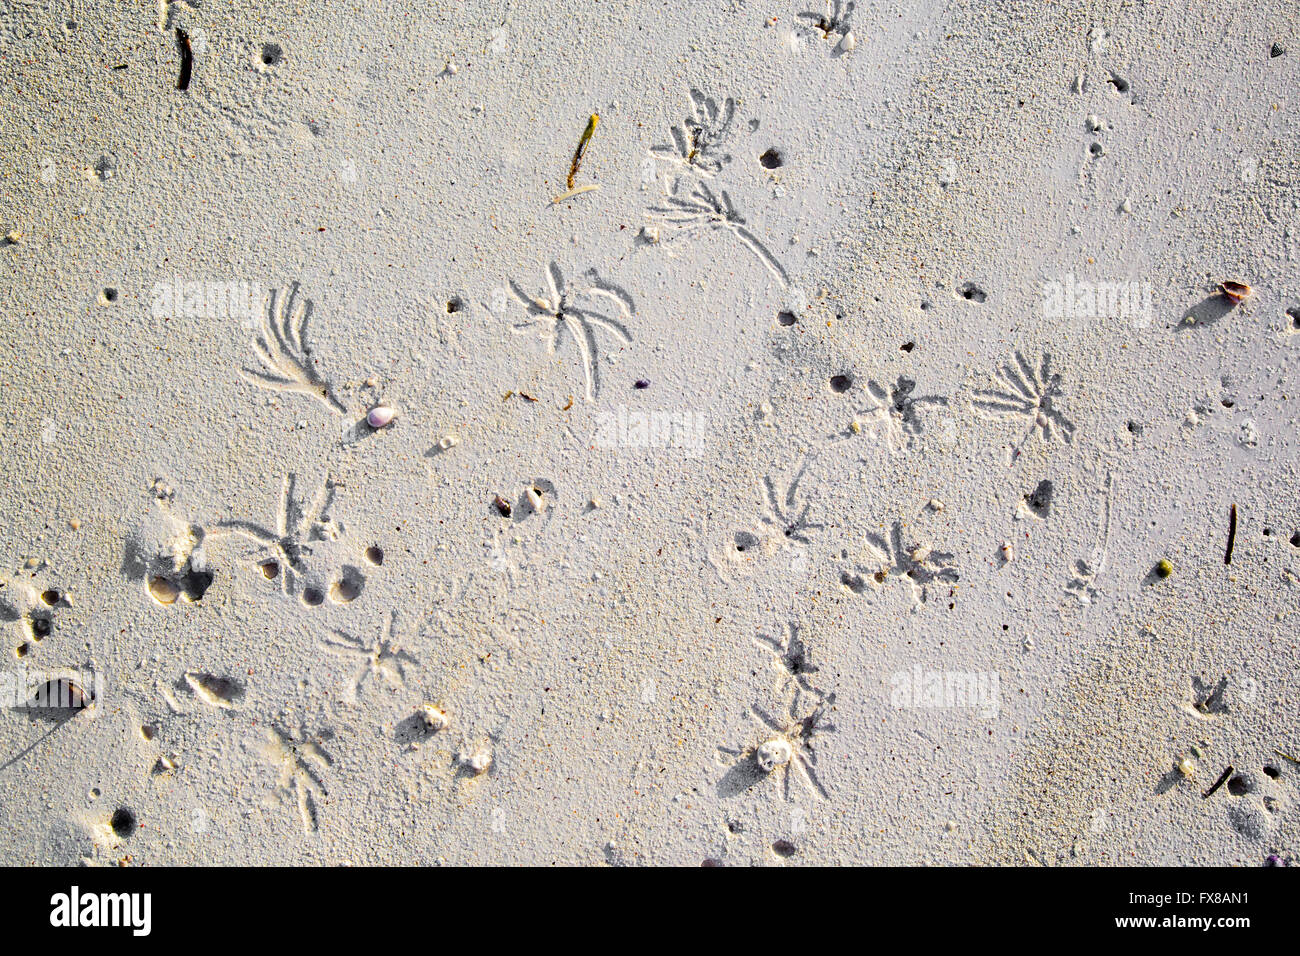 Des motifs réalisés par les vers de sable dans une plage de sable blanc de poudre de l'est de Zanzibar, au large de la côte Est de l'Afrique Banque D'Images